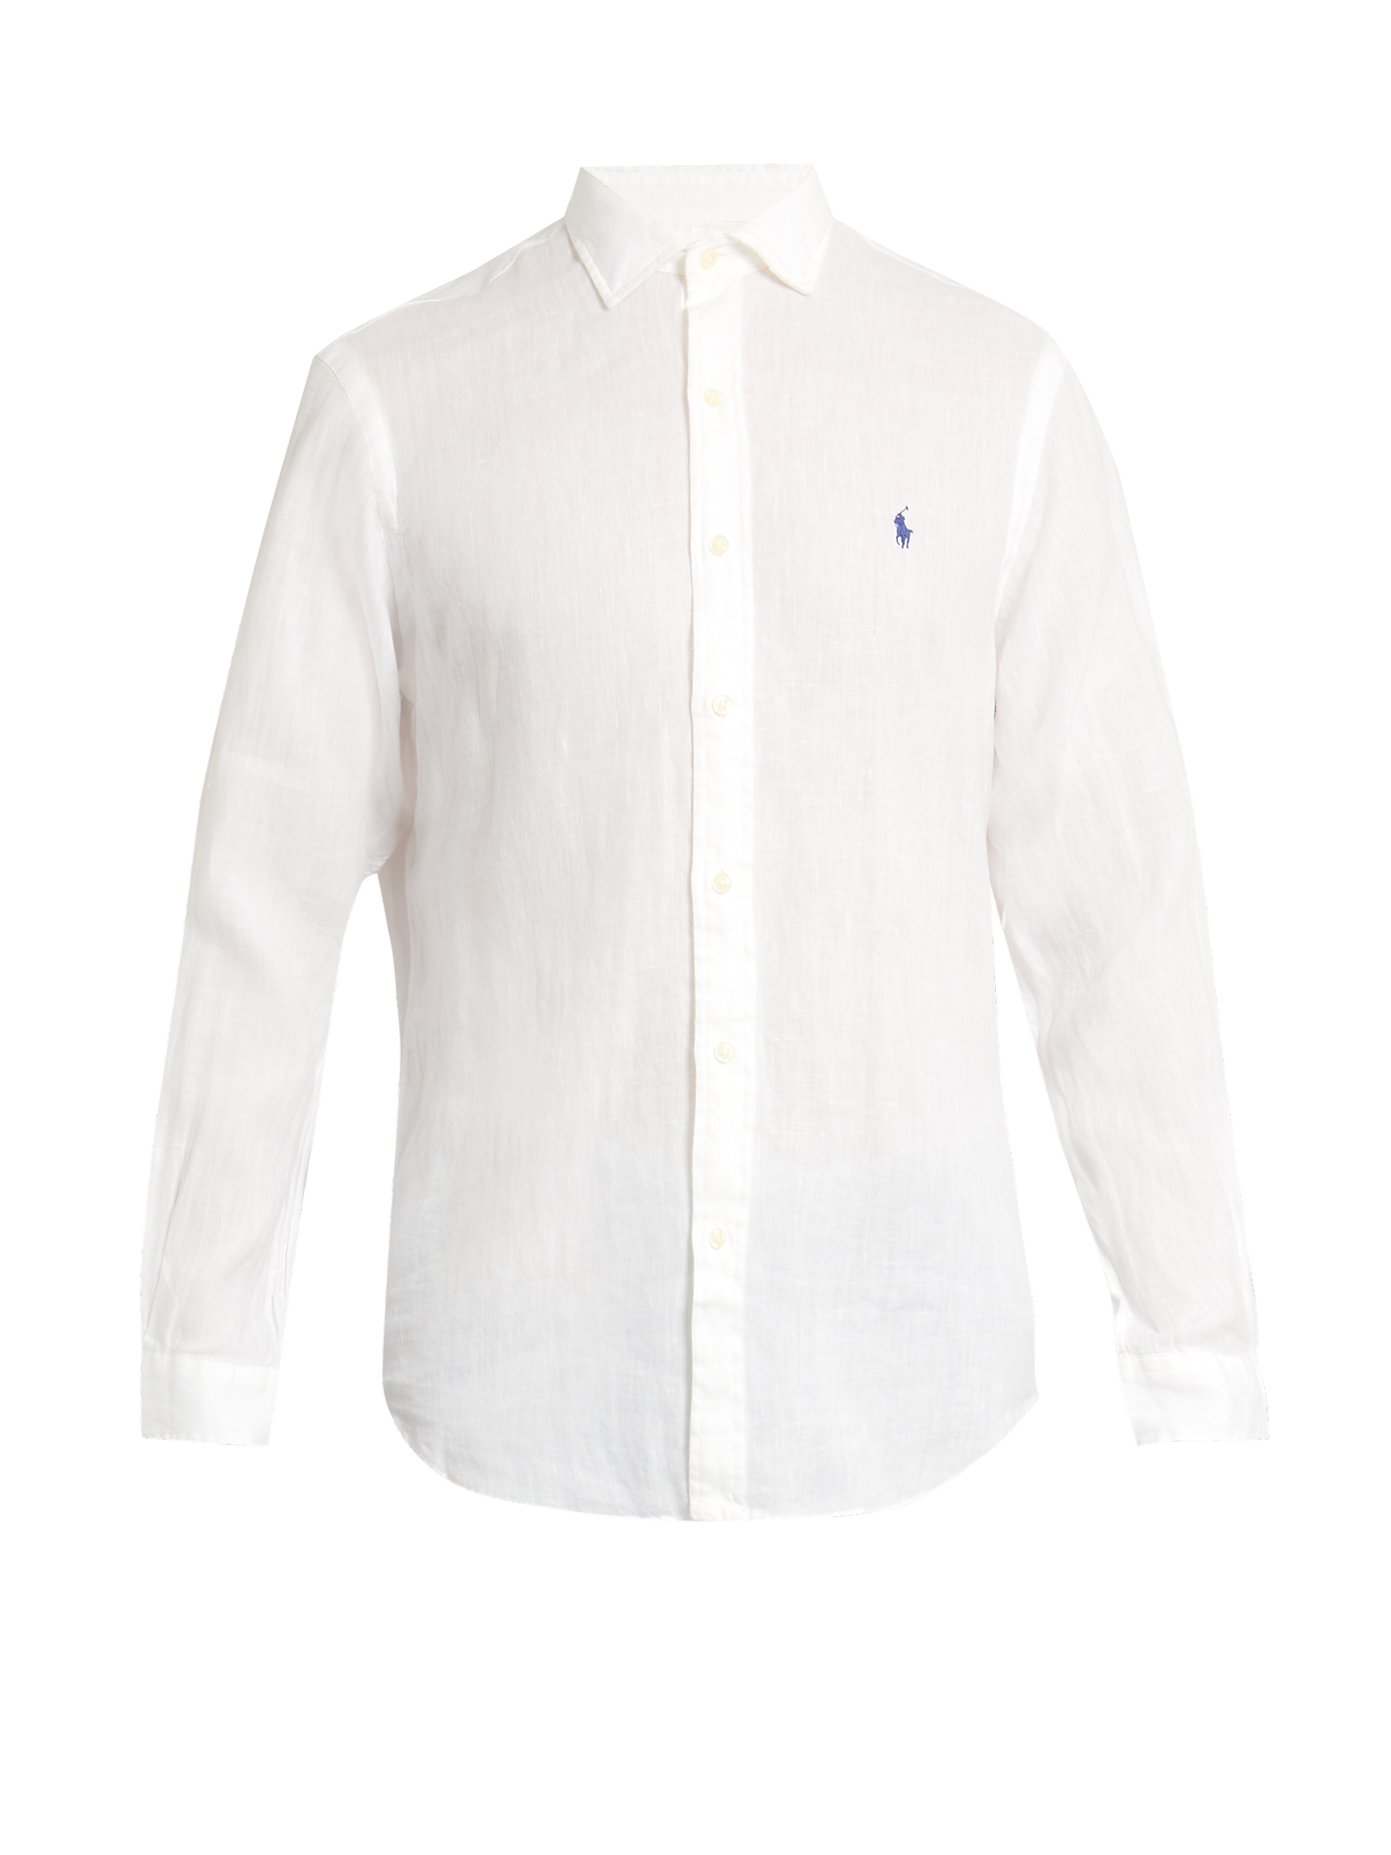 ralph lauren white linen shirt